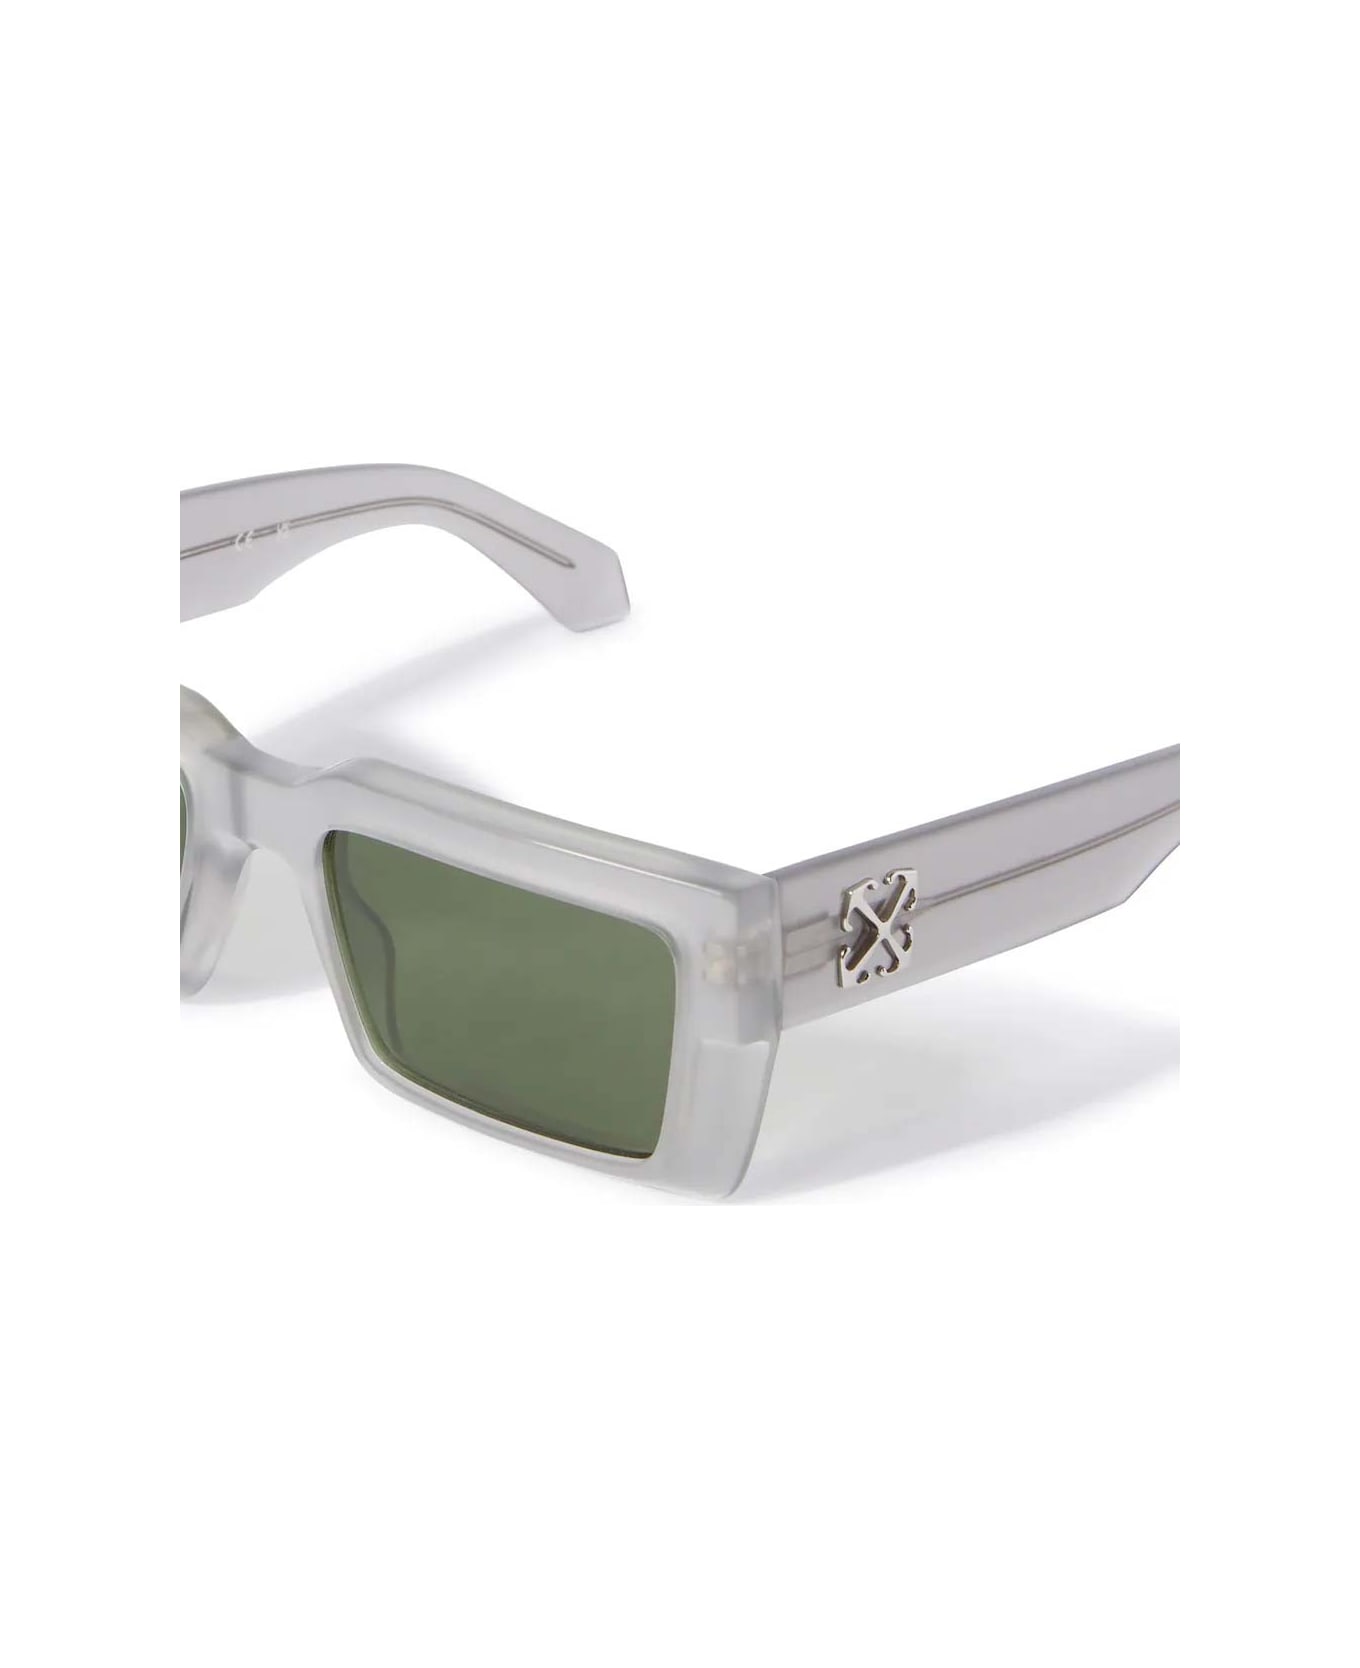 Off-White Sunglasses - Grigio/Verde